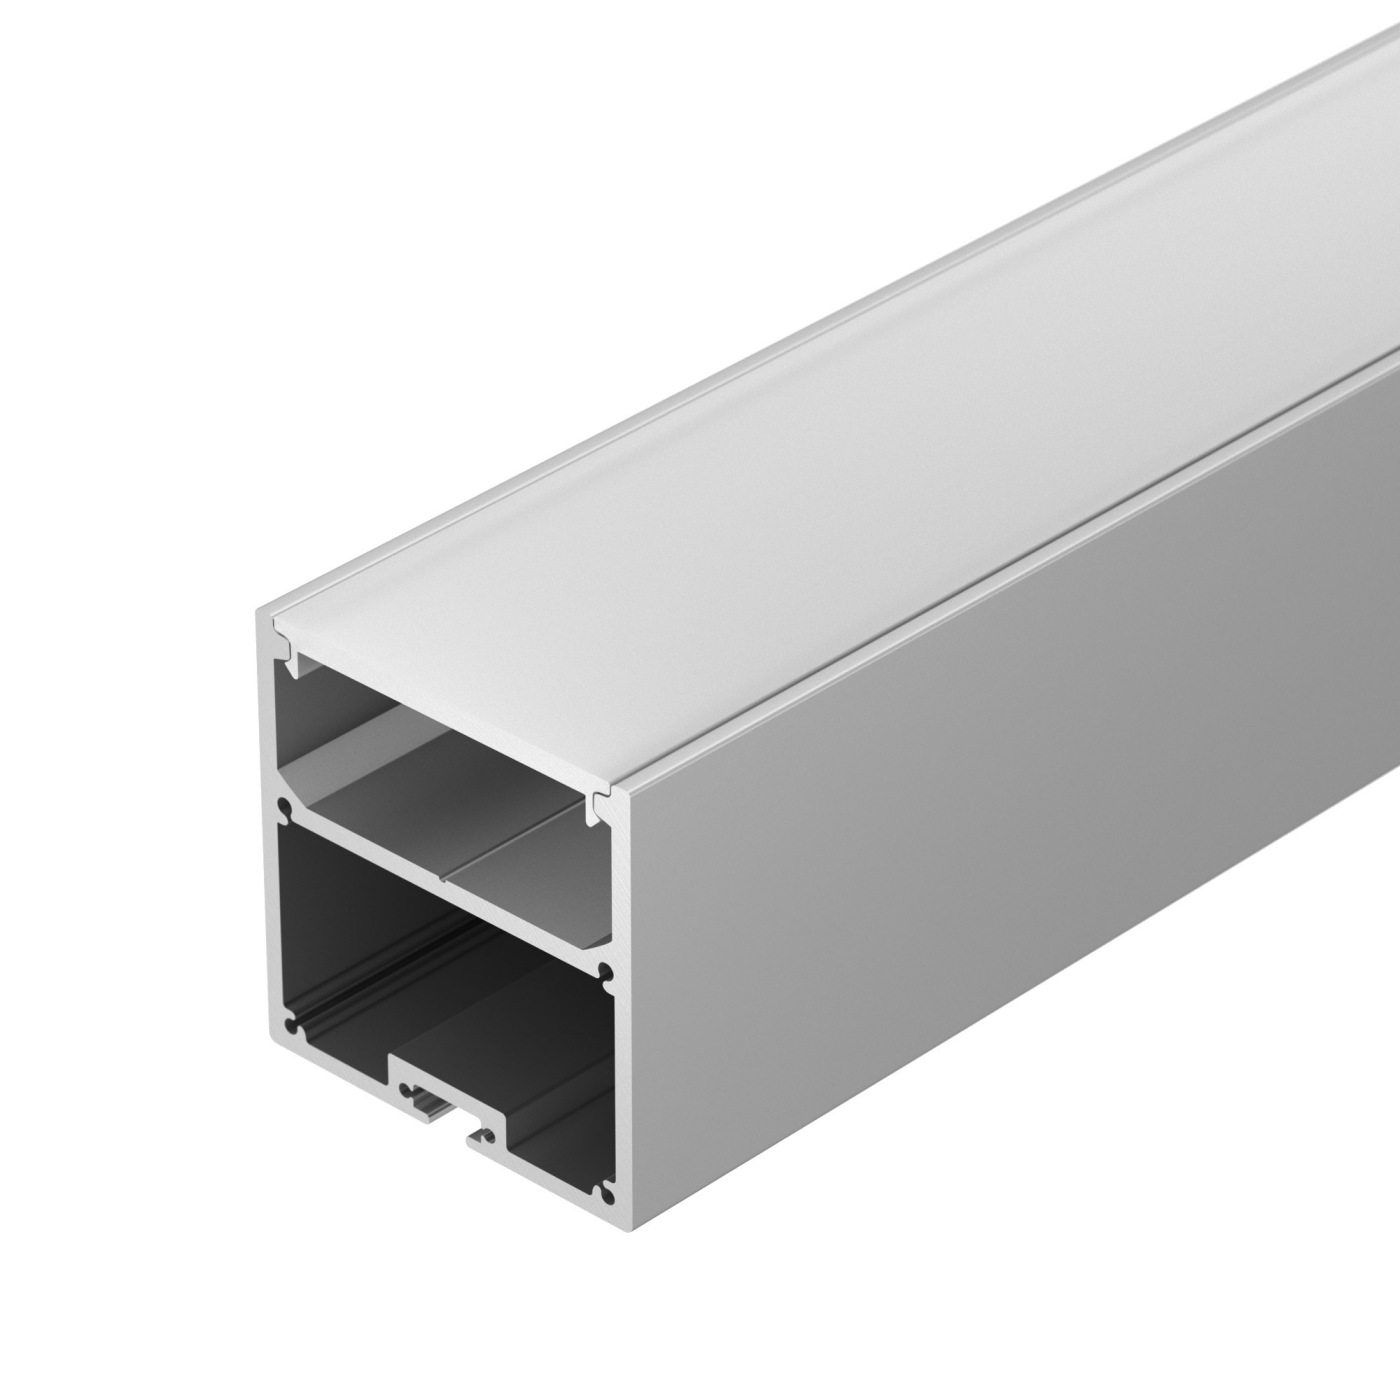 Профиль SL-LINE-5050-2000 ANOD профиль алюминиевый накладной подвесной с отсеком для бп серебро cab265